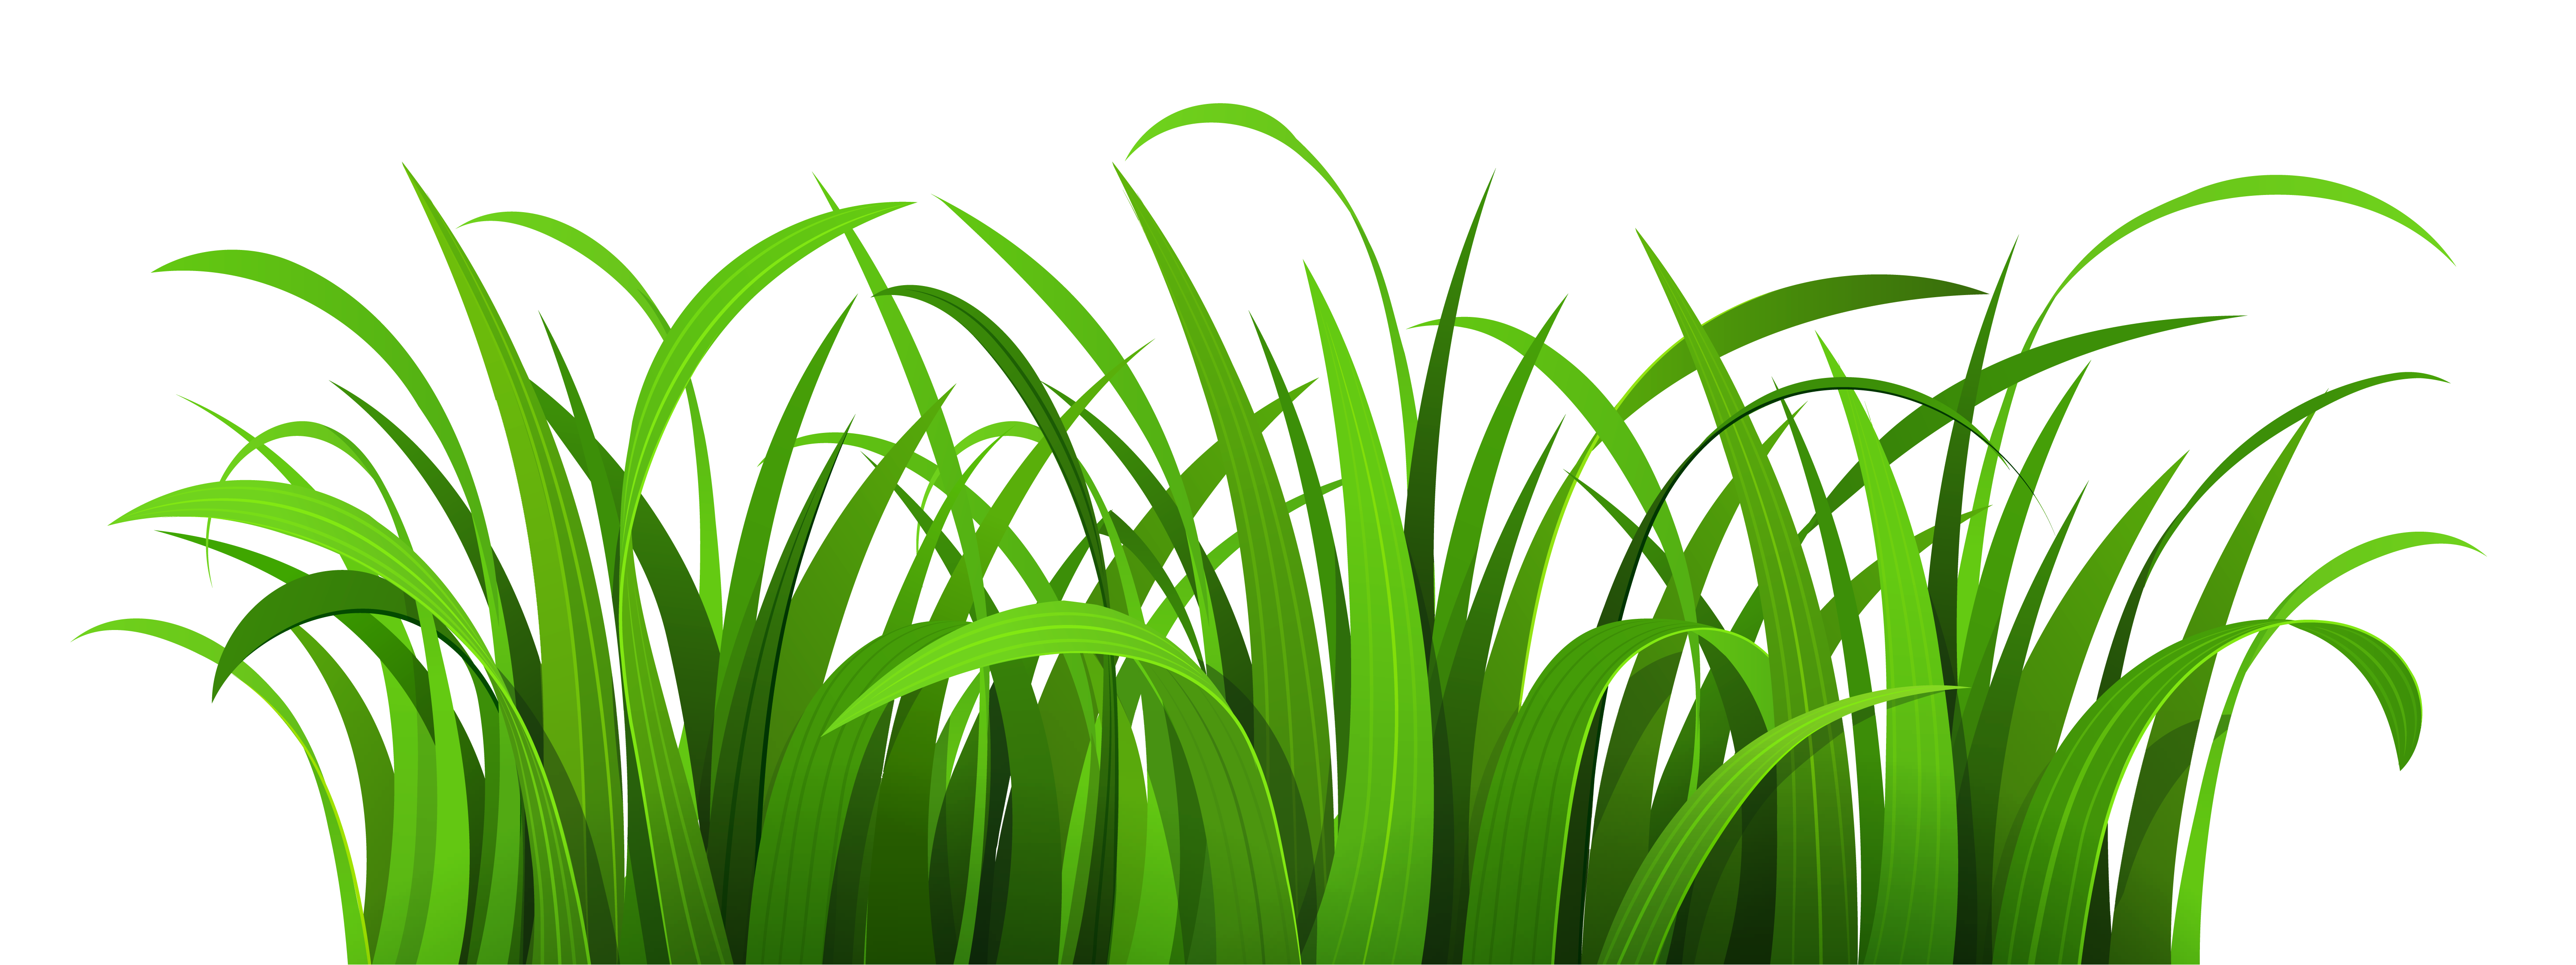 clipart grass forest grass